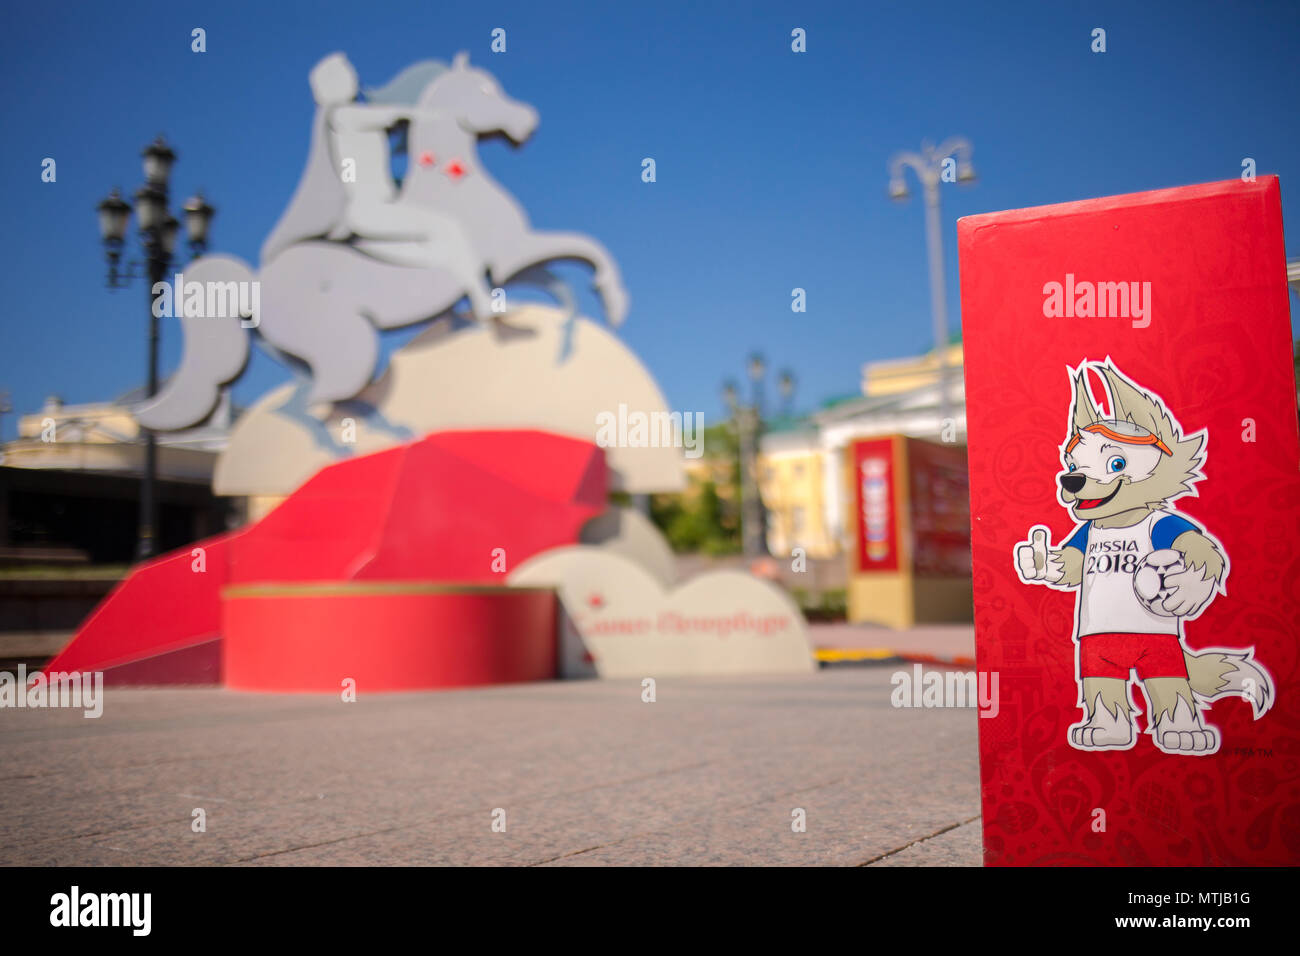 Mascotte officielle de la Coupe du Monde de la FIFA 2018 en Russie - Zabivaka dans les installations de sites emblématiques des villes participants de la Coupe du Monde de la FIFA 2018. Banque D'Images